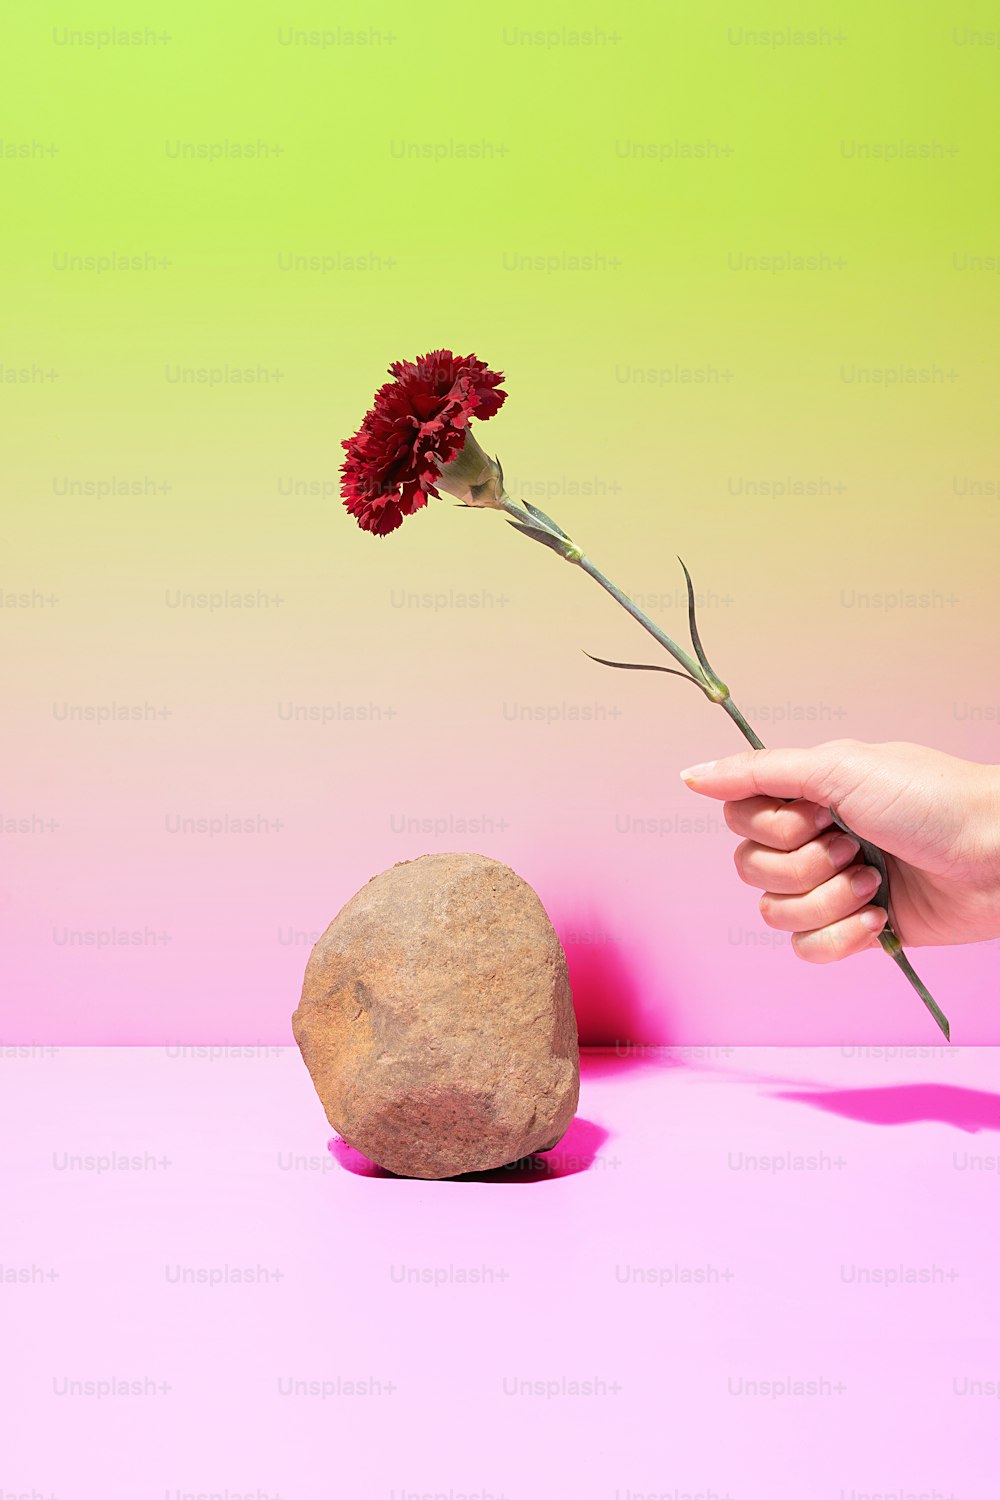 바위 앞에서 꽃을 들고 있는 사람